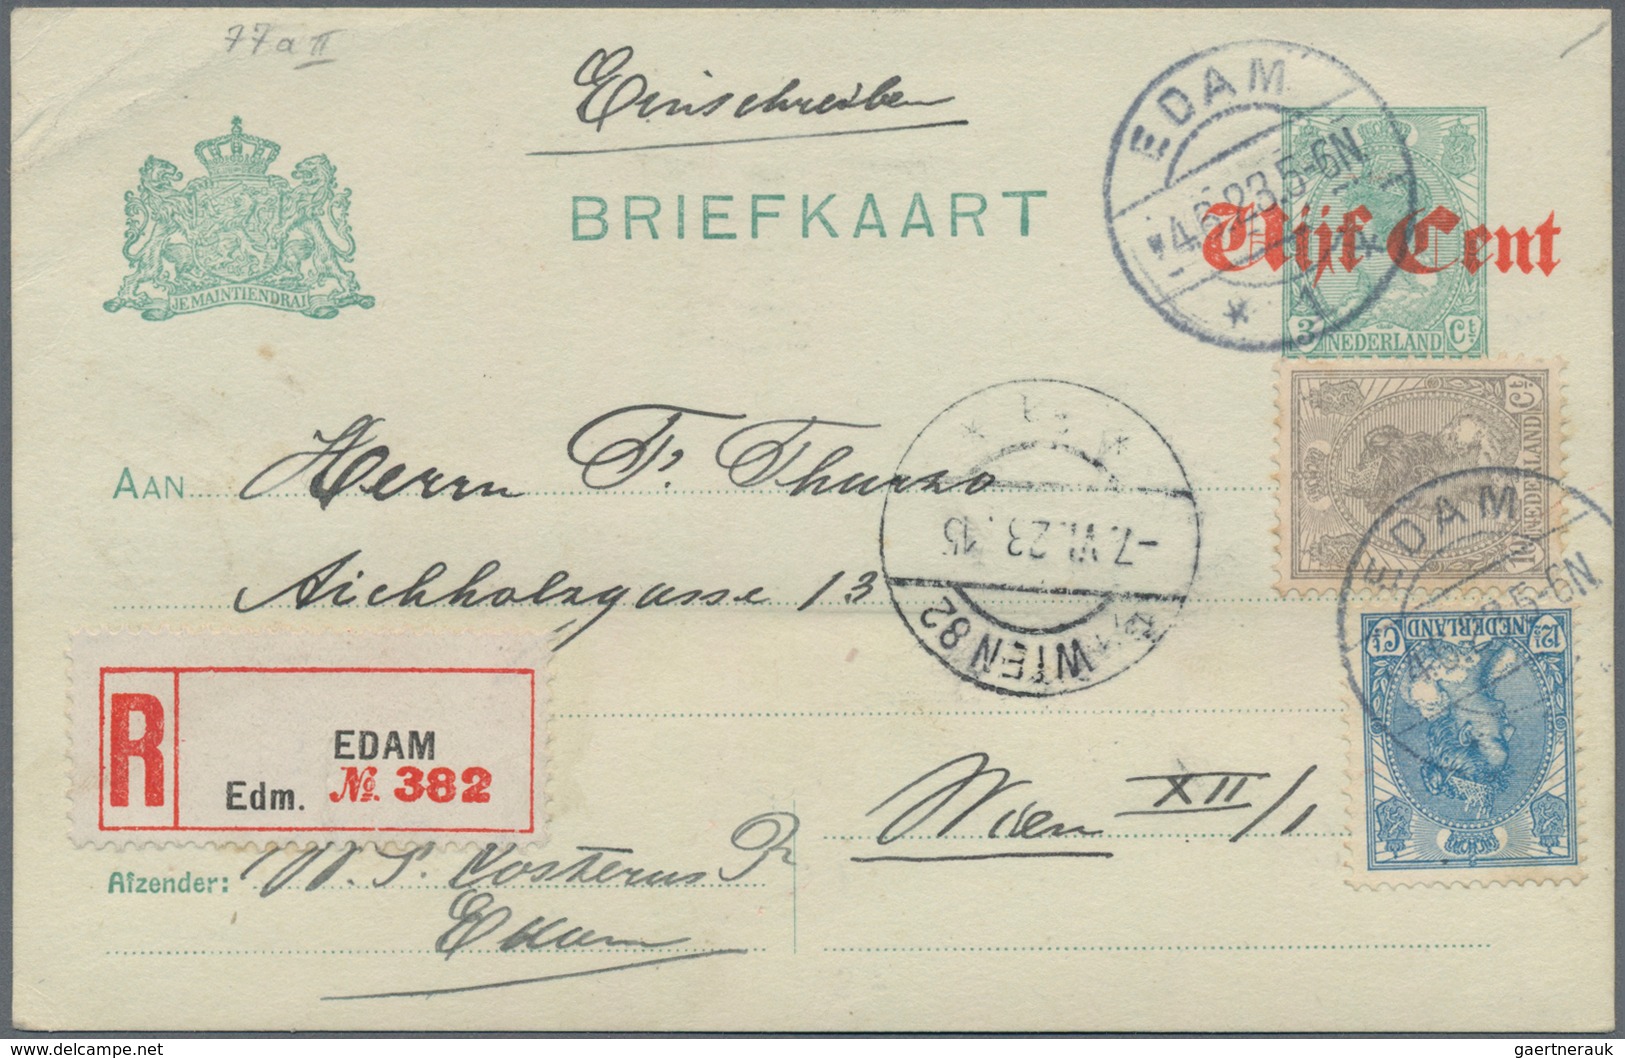 Niederlande - Ganzsachen: 1923, Stationery Card "5" On 3 Ct. Uprated With 10 And 20 Ct Wilhelmina Se - Ganzsachen